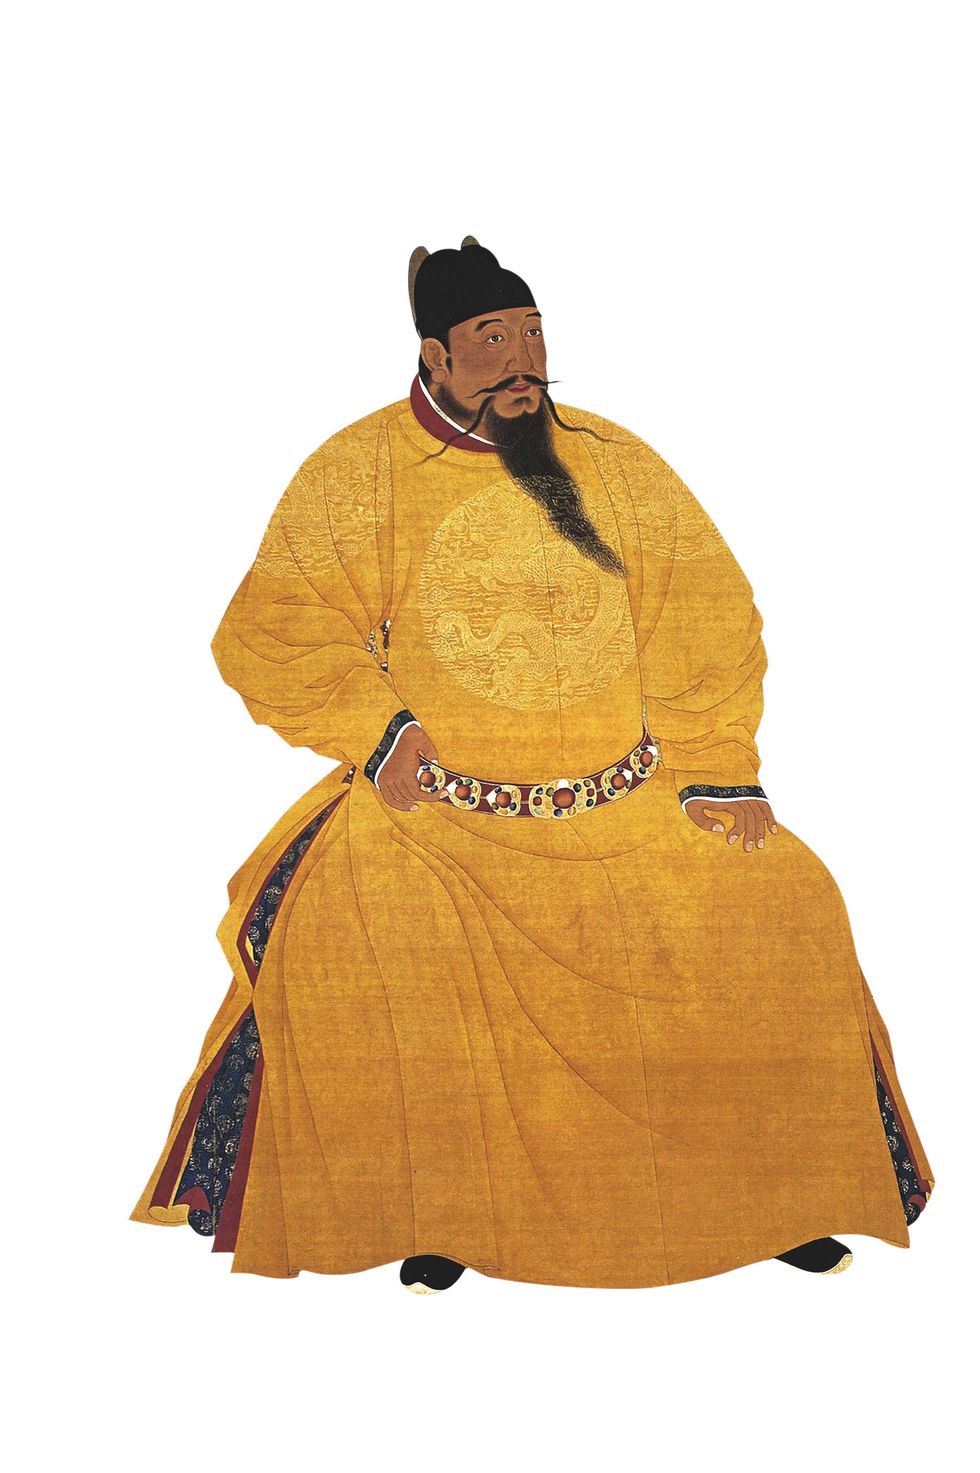 Mingkeizer Yongle gaf opdracht voor de expedities van Zheng He Hij verplaatste ook de Chinese hoofdstad naar Beijing en liet daar de Verboden Stad de keizerlijke residentie bouwen